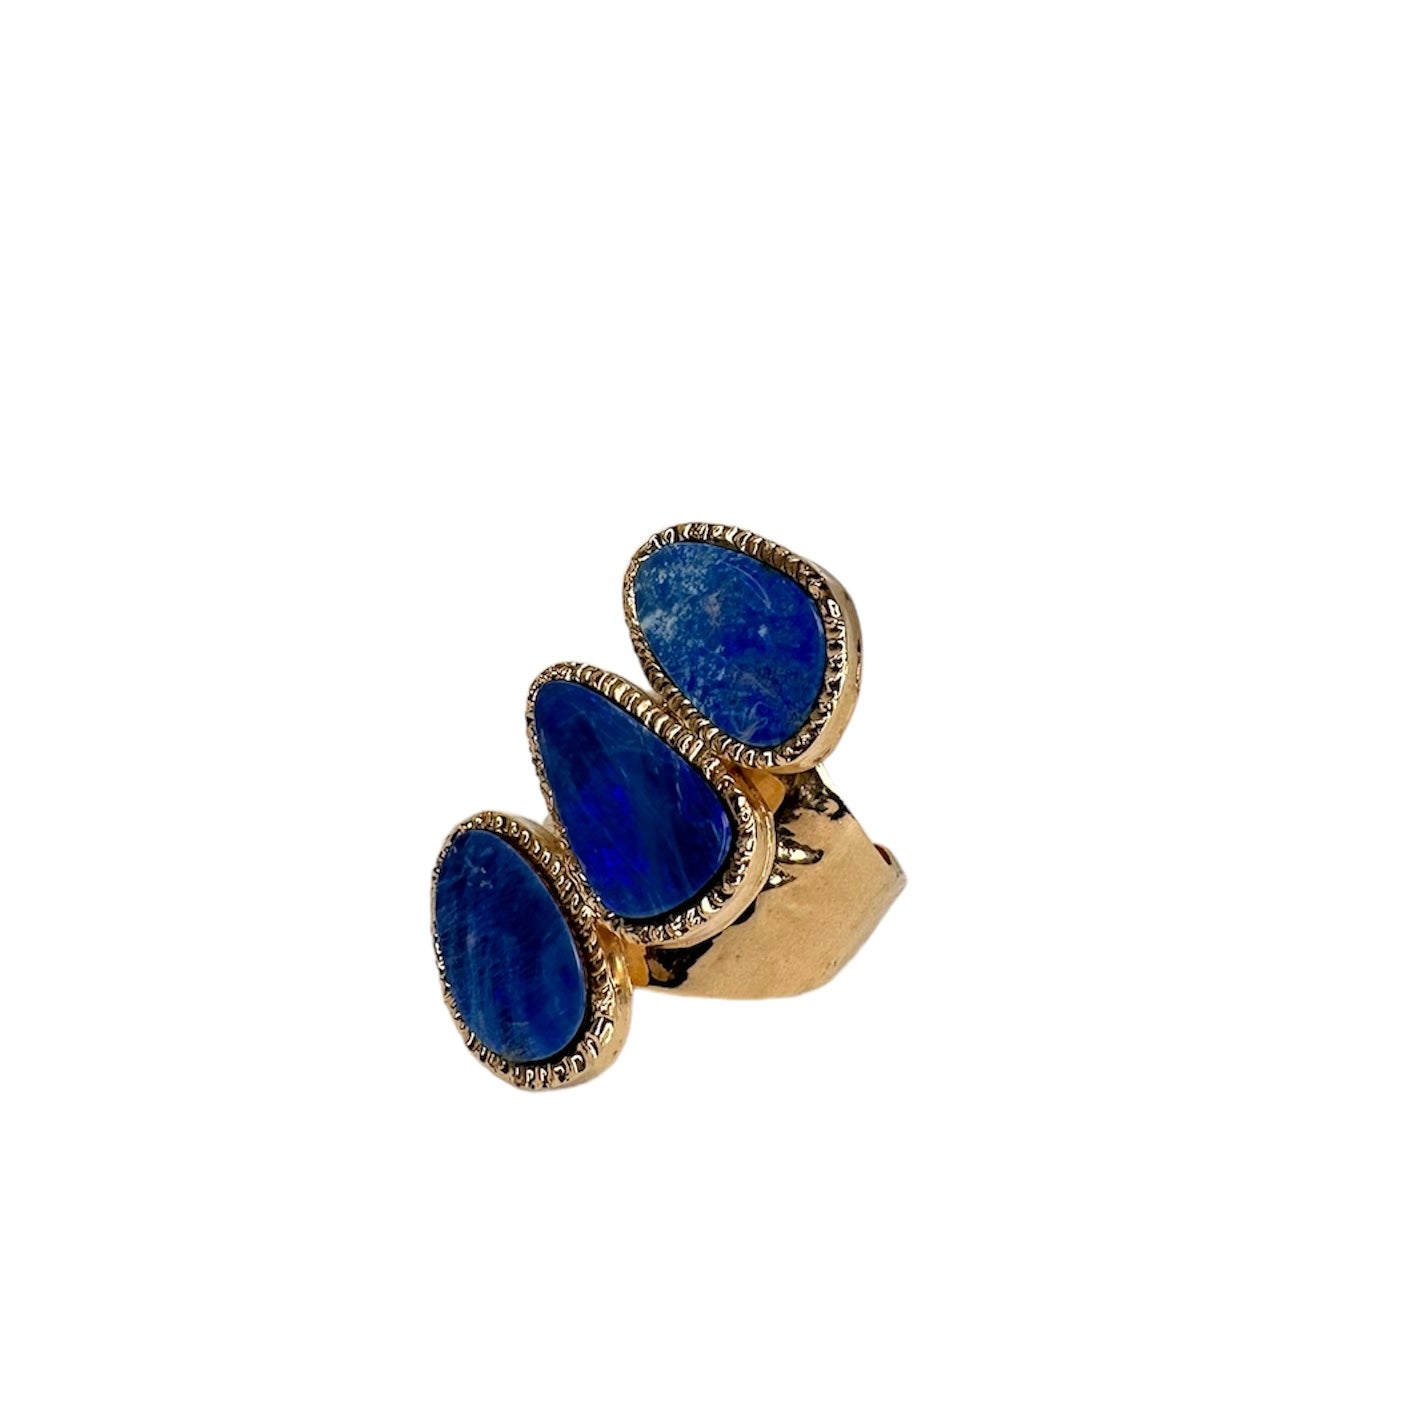 Blue Australian Opal Ring